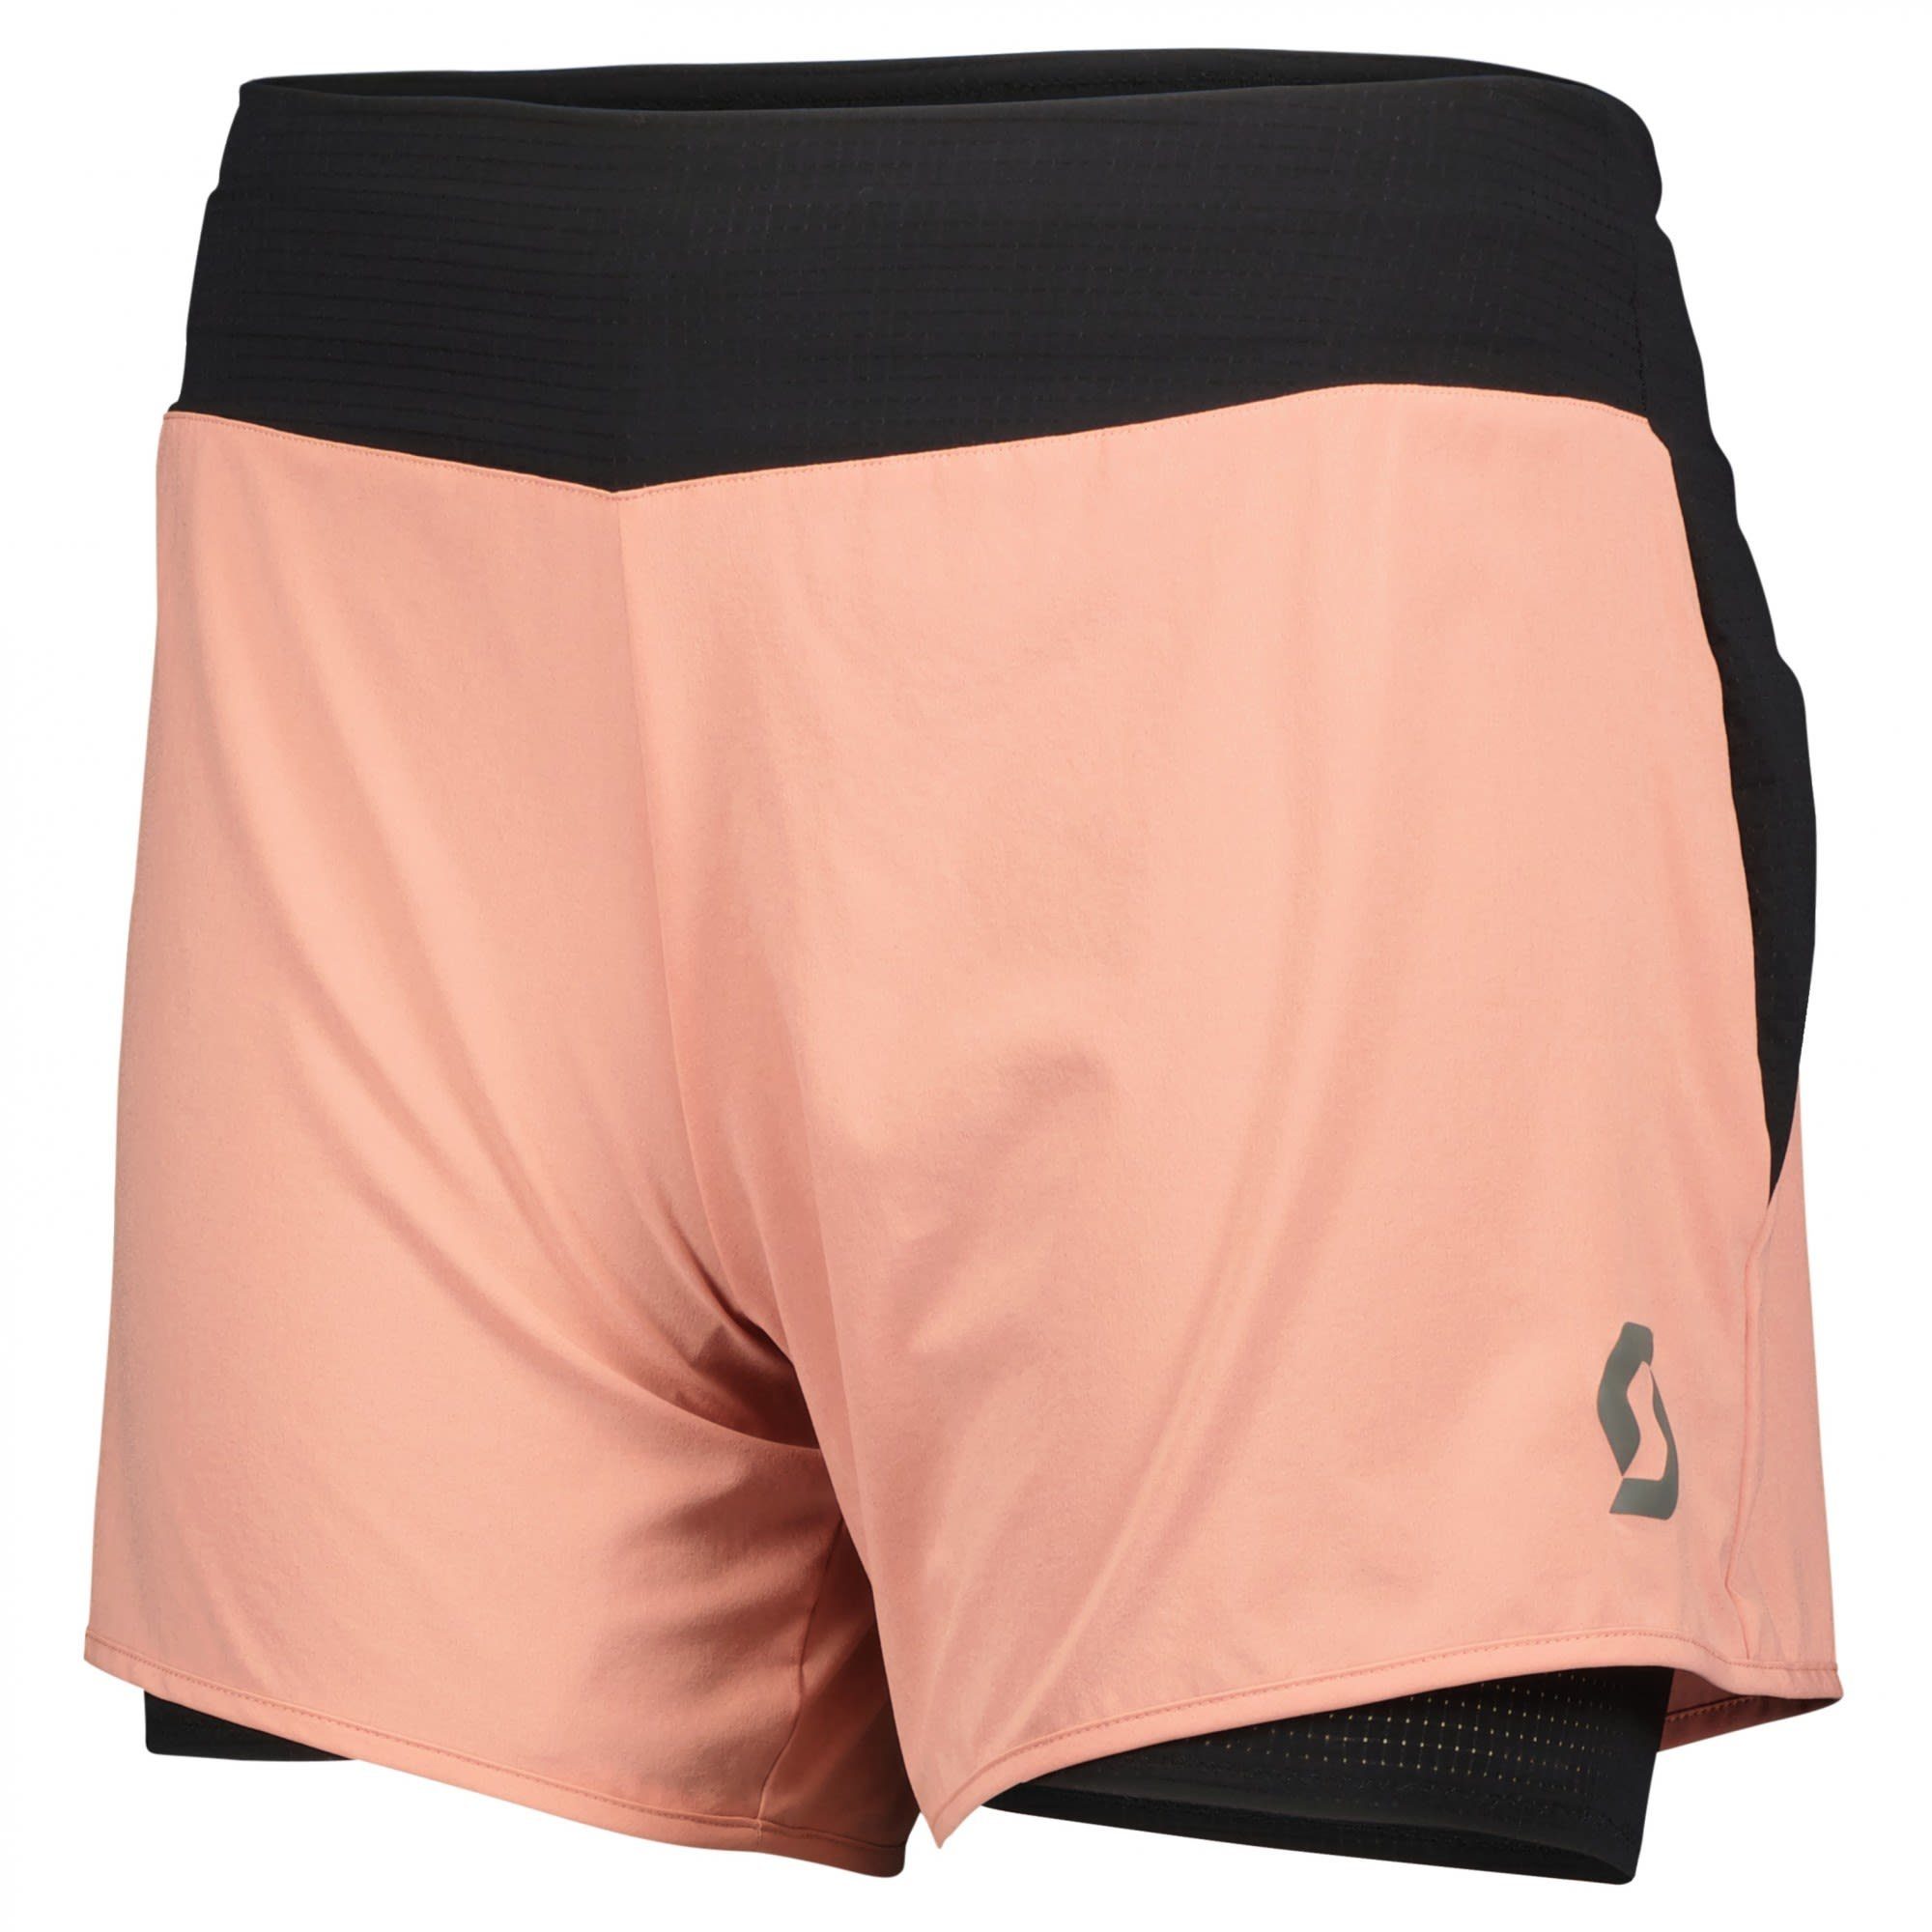 Scott W Scott Shorts Pink Crystal Shorts Strandshorts Trail Damen Run